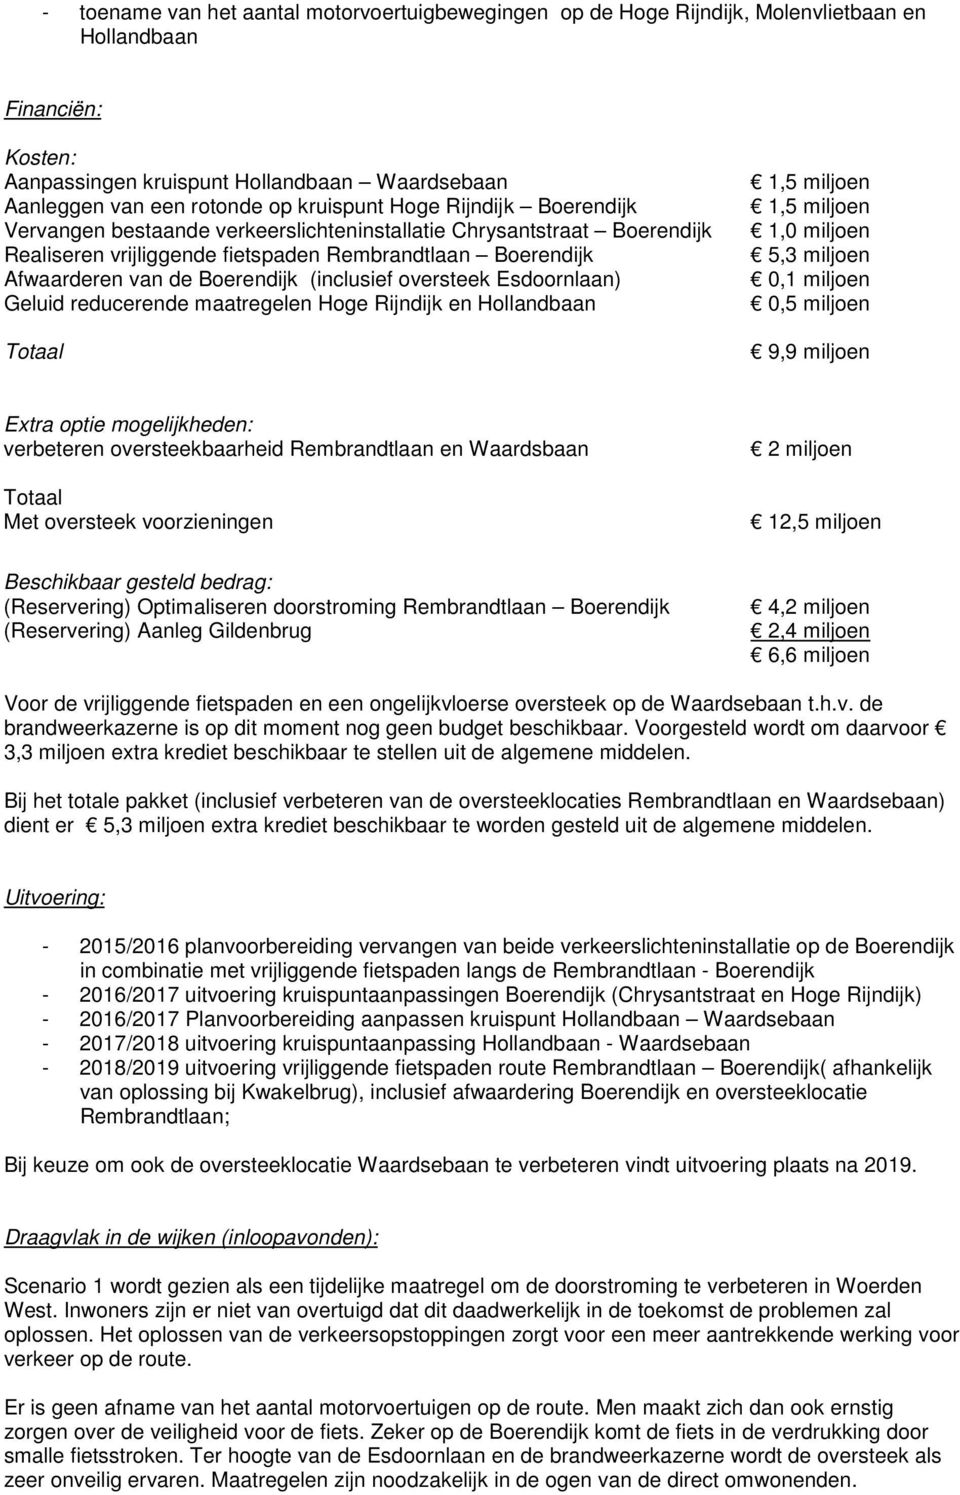 (inclusief oversteek Esdoornlaan) Geluid reducerende maatregelen Hoge Rijndijk en Hollandbaan Totaal 1,5 miljoen 1,5 miljoen 1,0 miljoen 5,3 miljoen 0,1 miljoen 0,5 miljoen 9,9 miljoen Extra optie